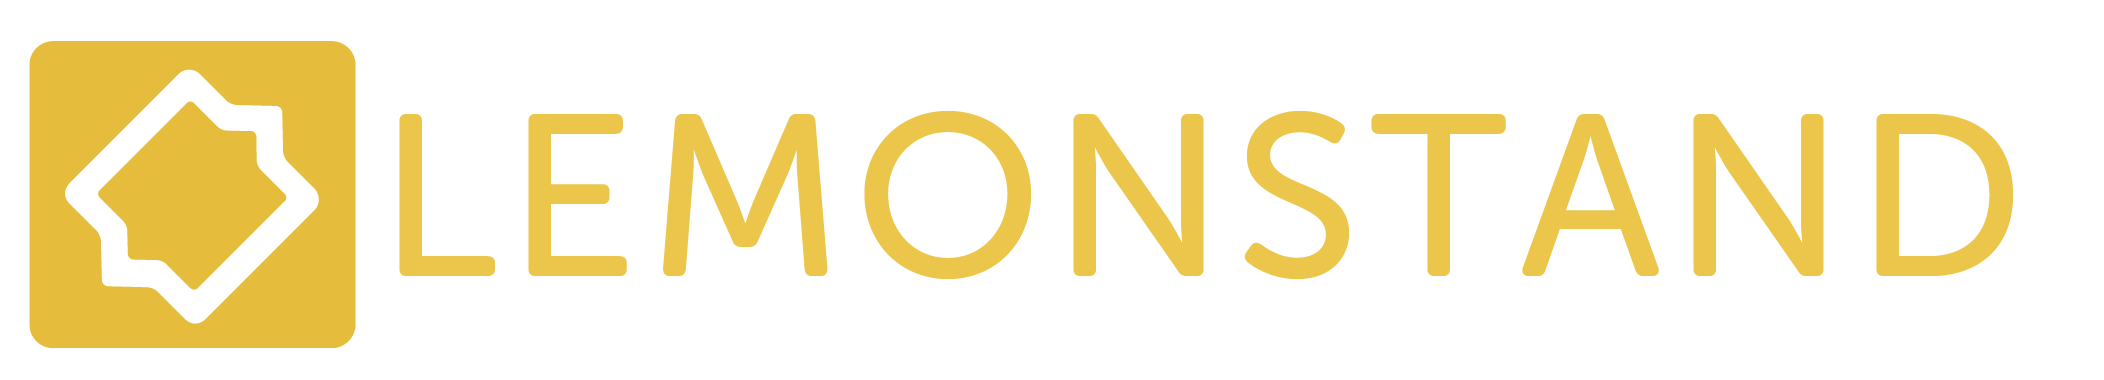 lemonstand-logo